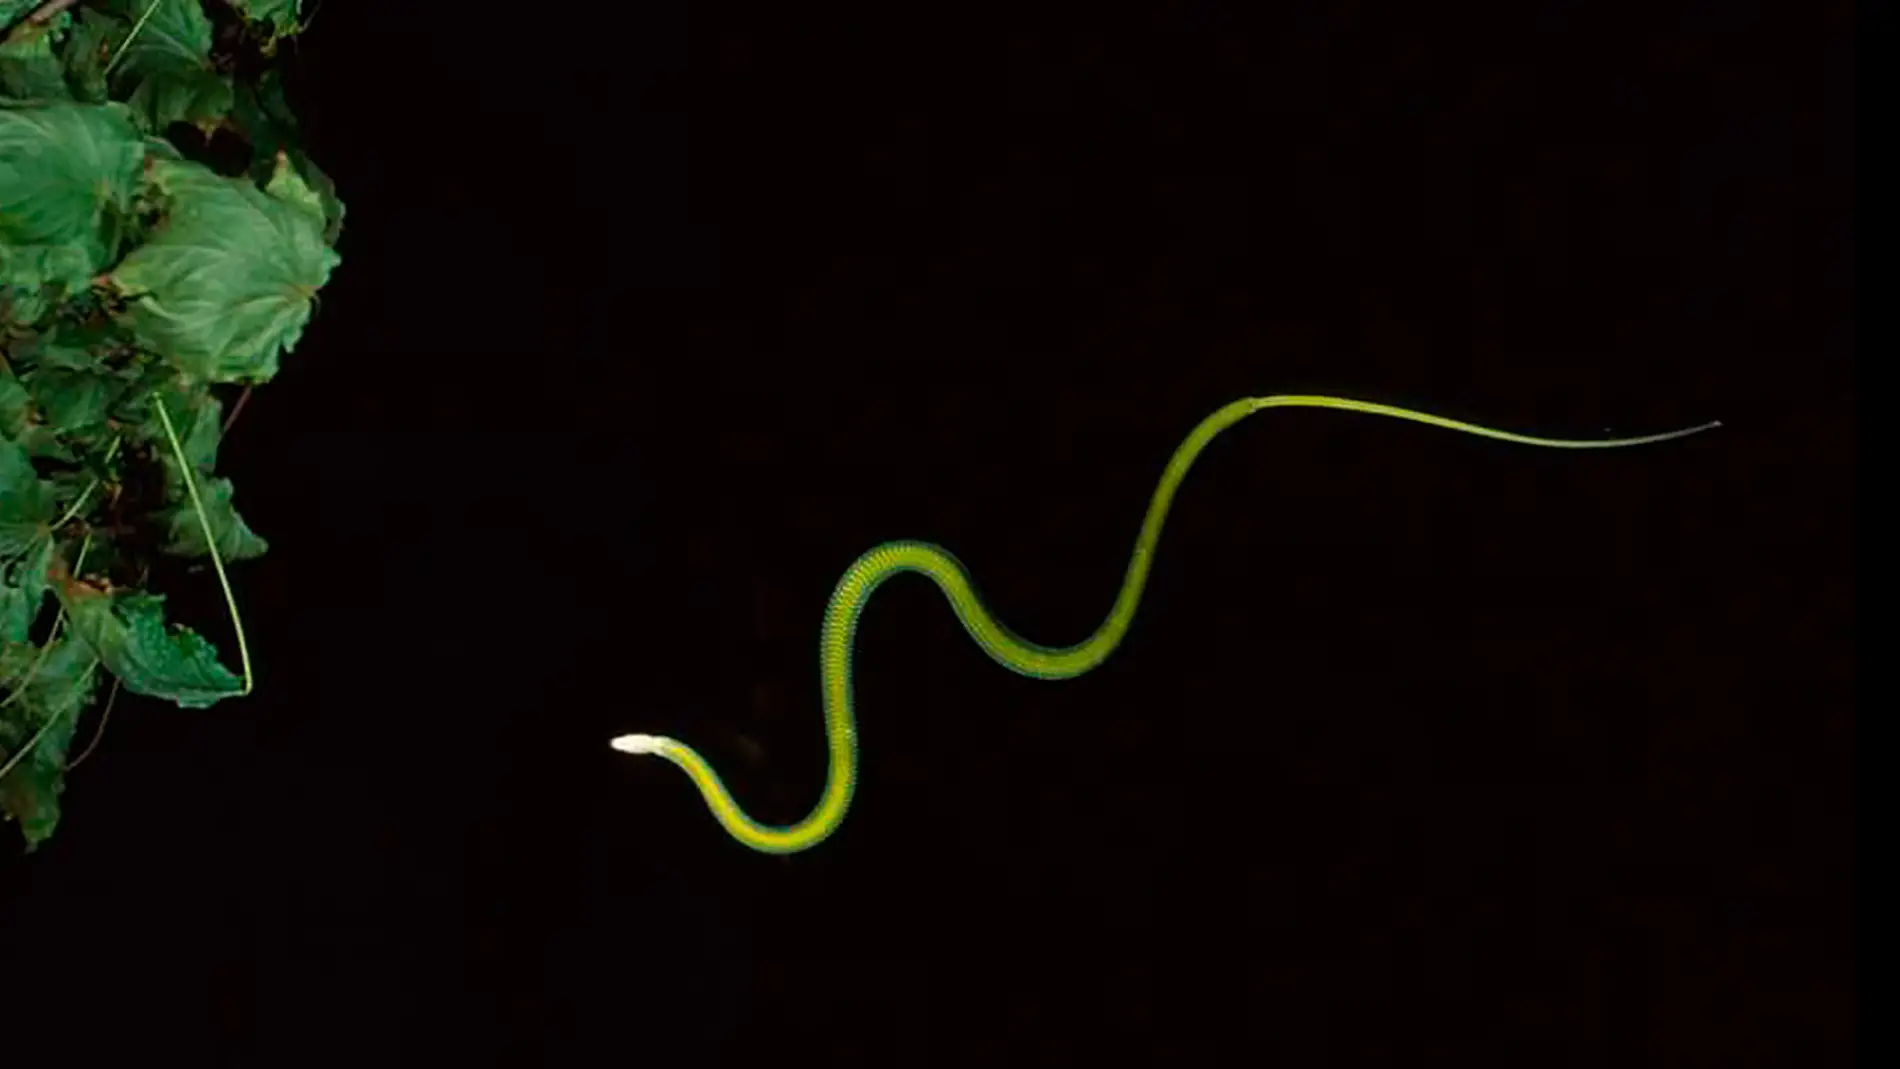 Las serpientes voladoras usan sus ondulaciones para deslizarse por el aire